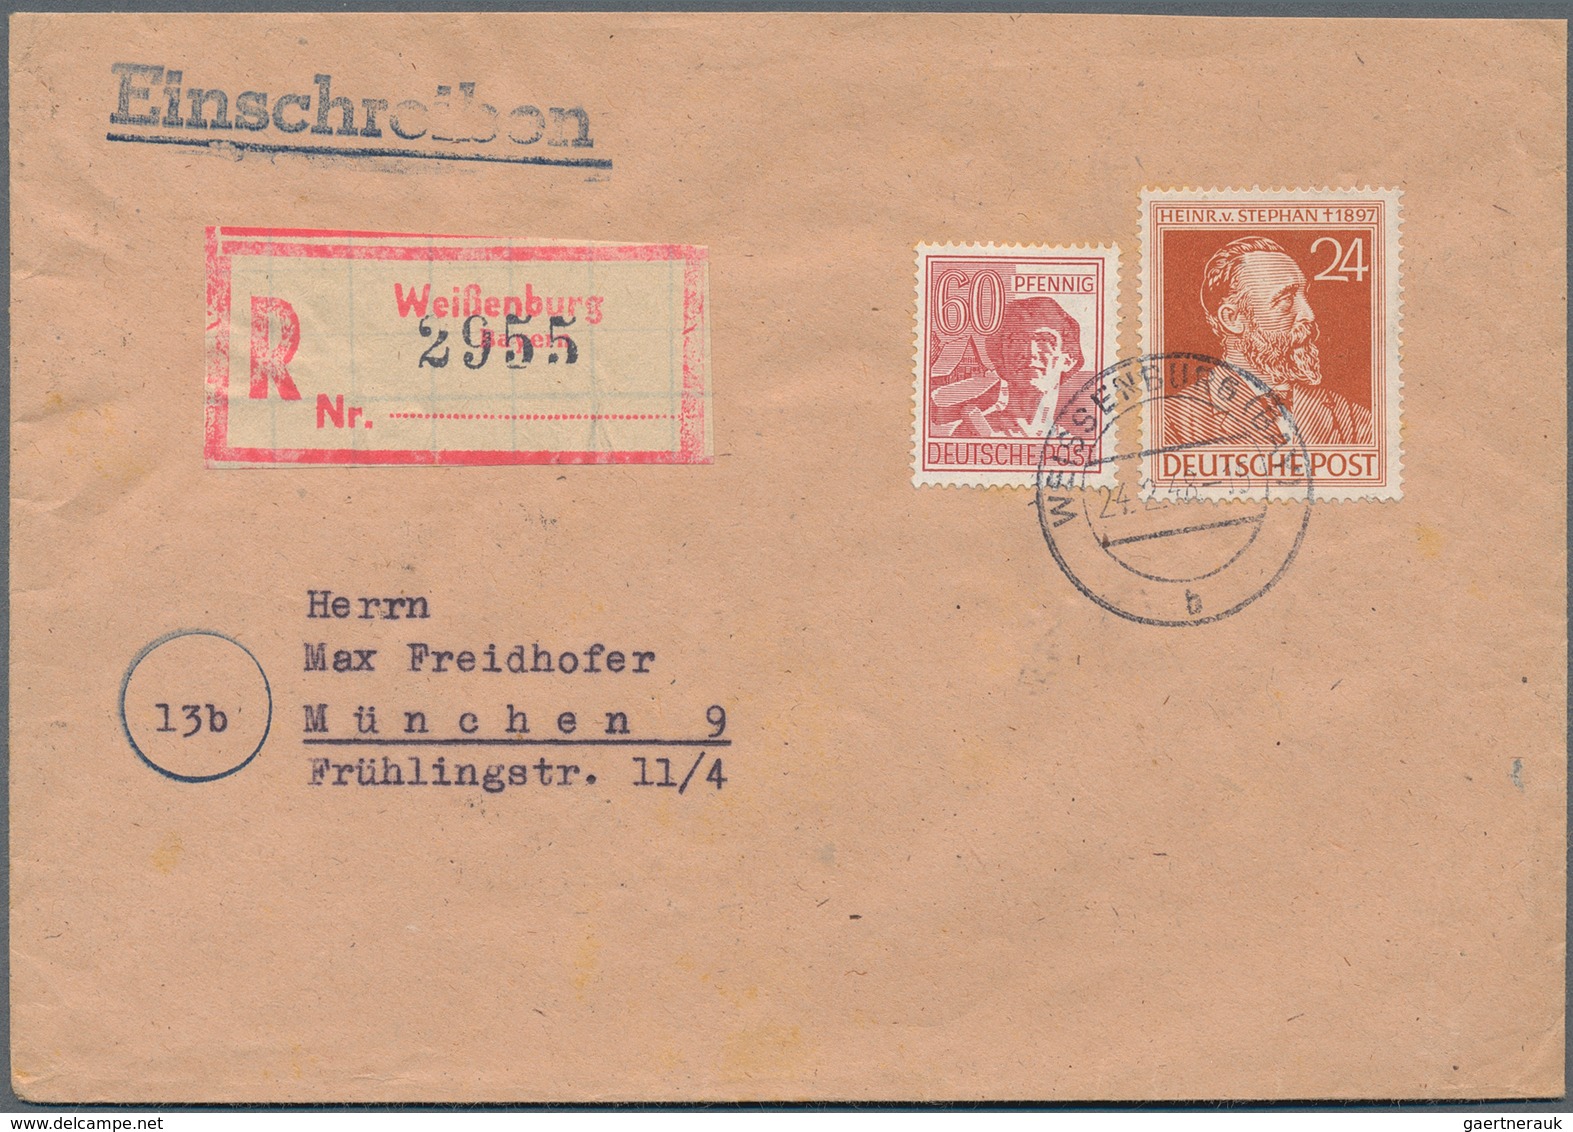 Alliierte Besetzung - Gemeinschaftsausgaben: 1947-1948, toller Posten mit über 500 R-Briefen, dabei